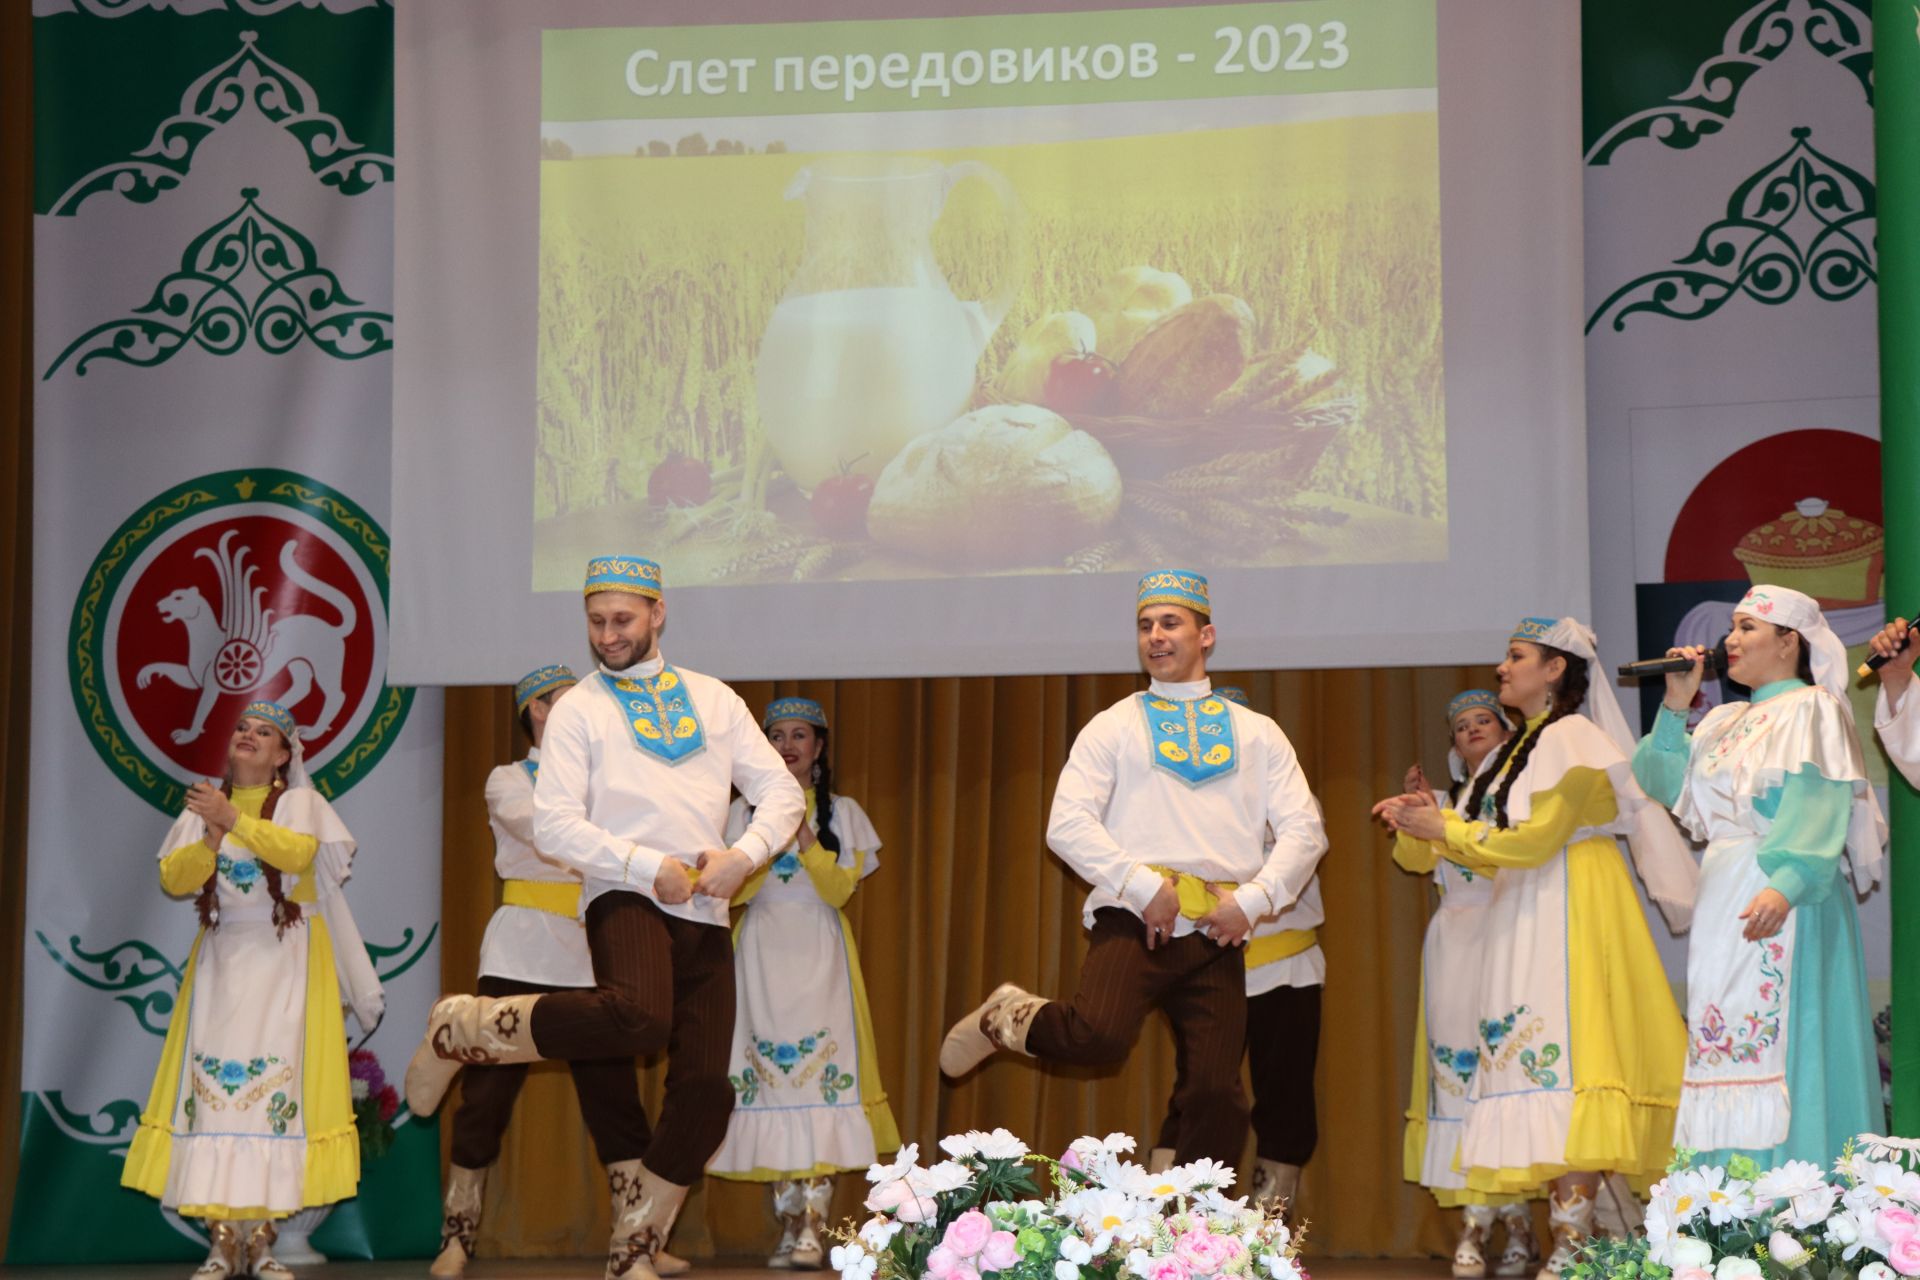 Слет передовиков сельского хозяйства в Дрожжановском районе -2023